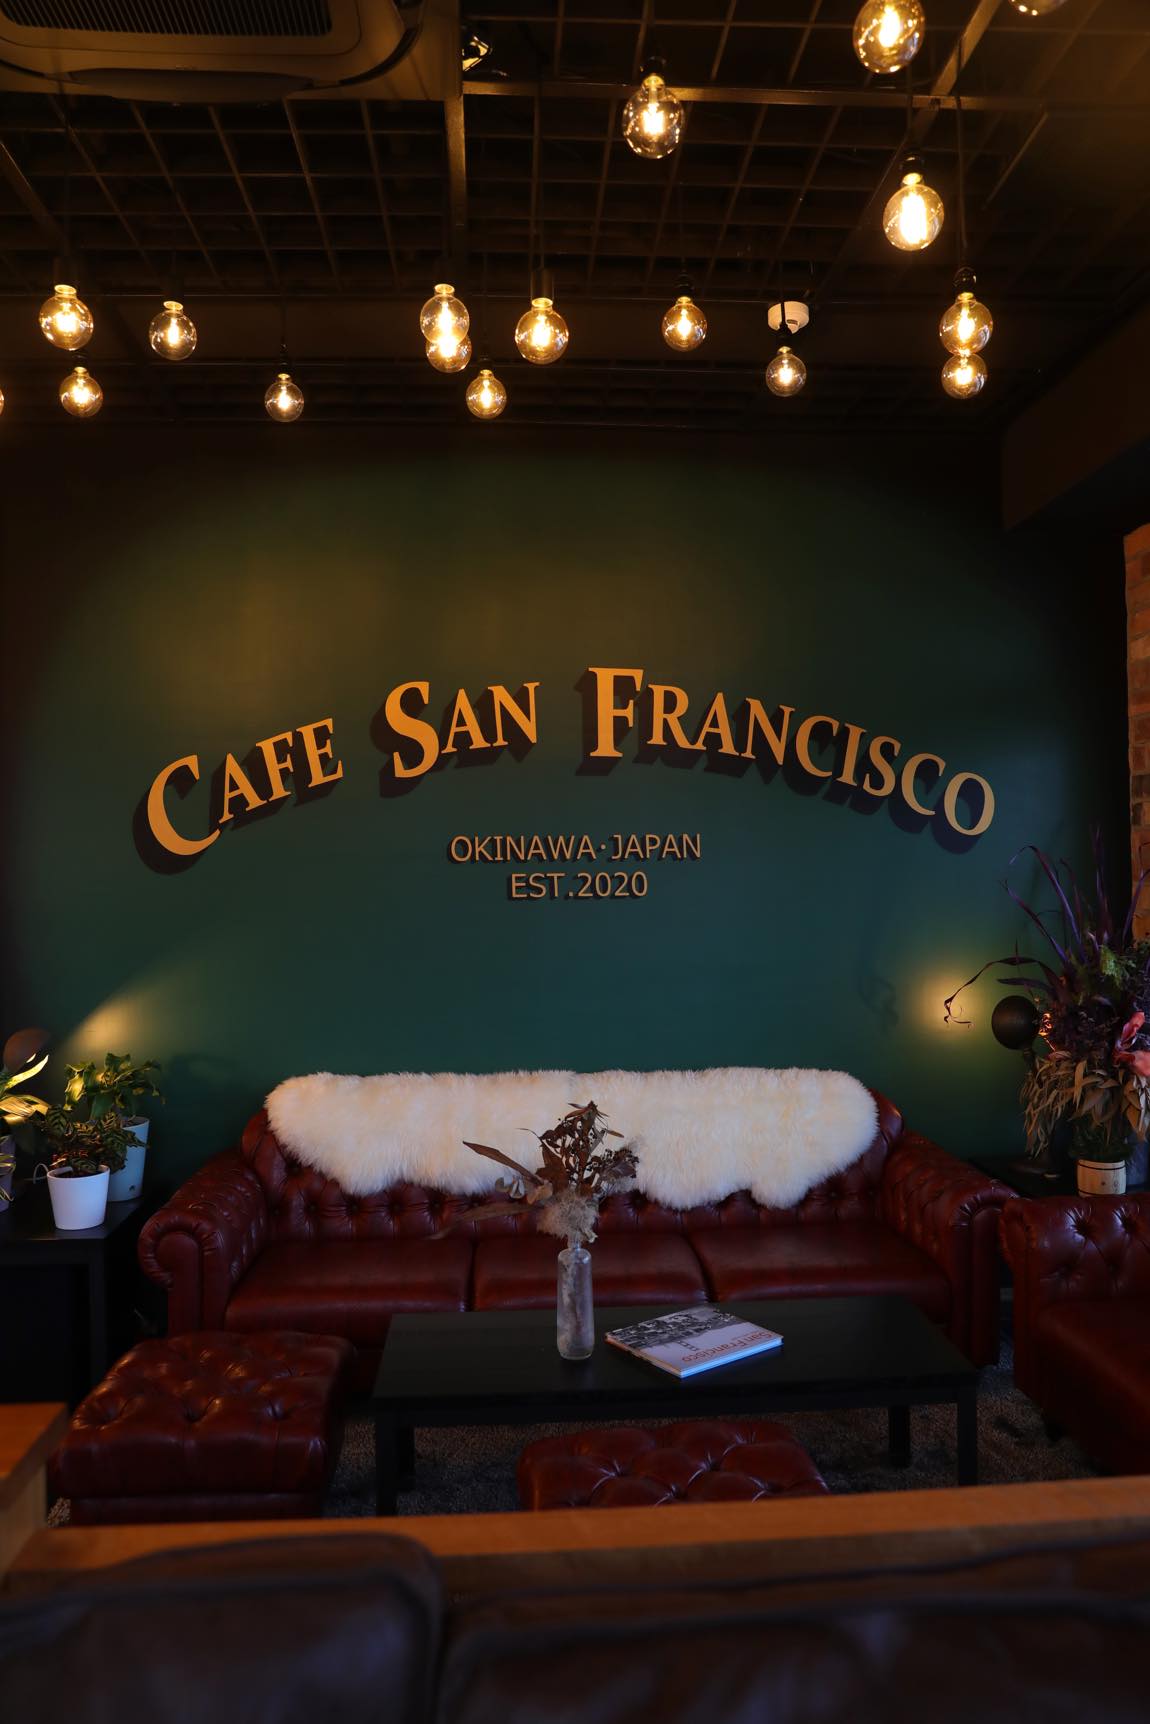 Cafe San Francisco (カフェ サンフランシスコ)